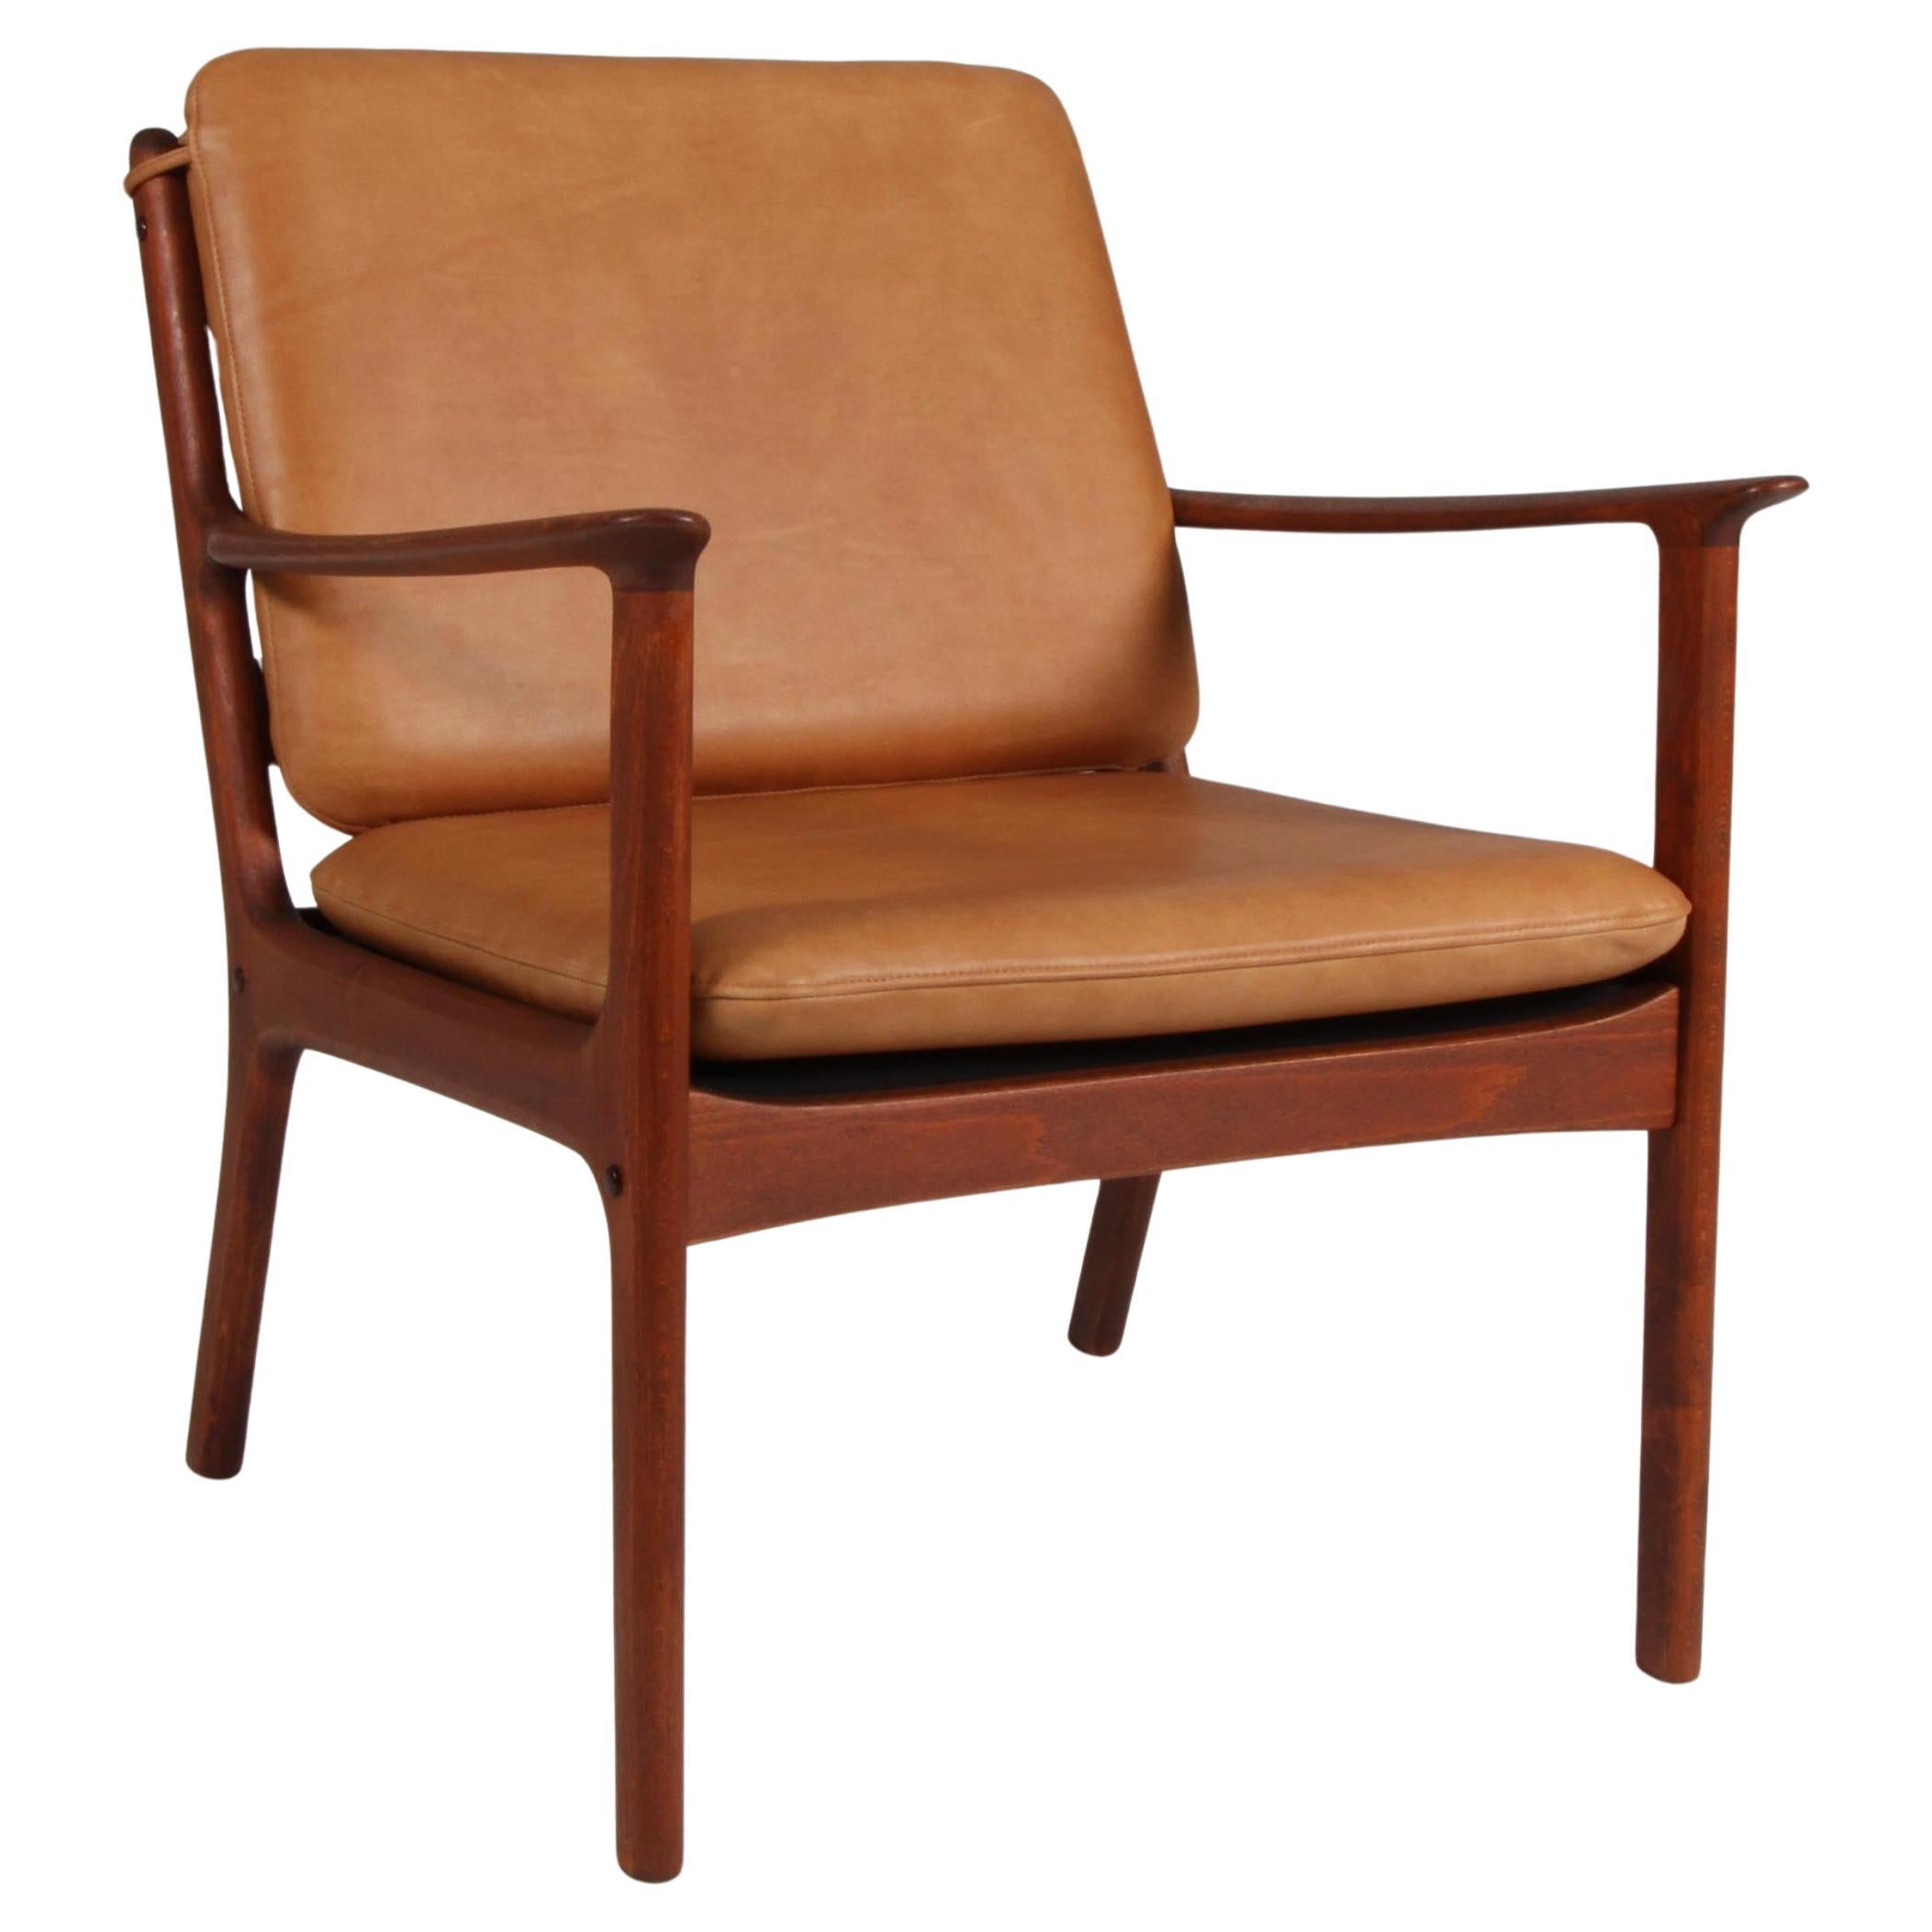 Ole Wanscher Lounge Chairs, Modell PJ112, Cognac Anilinleder, Buche gebeizt